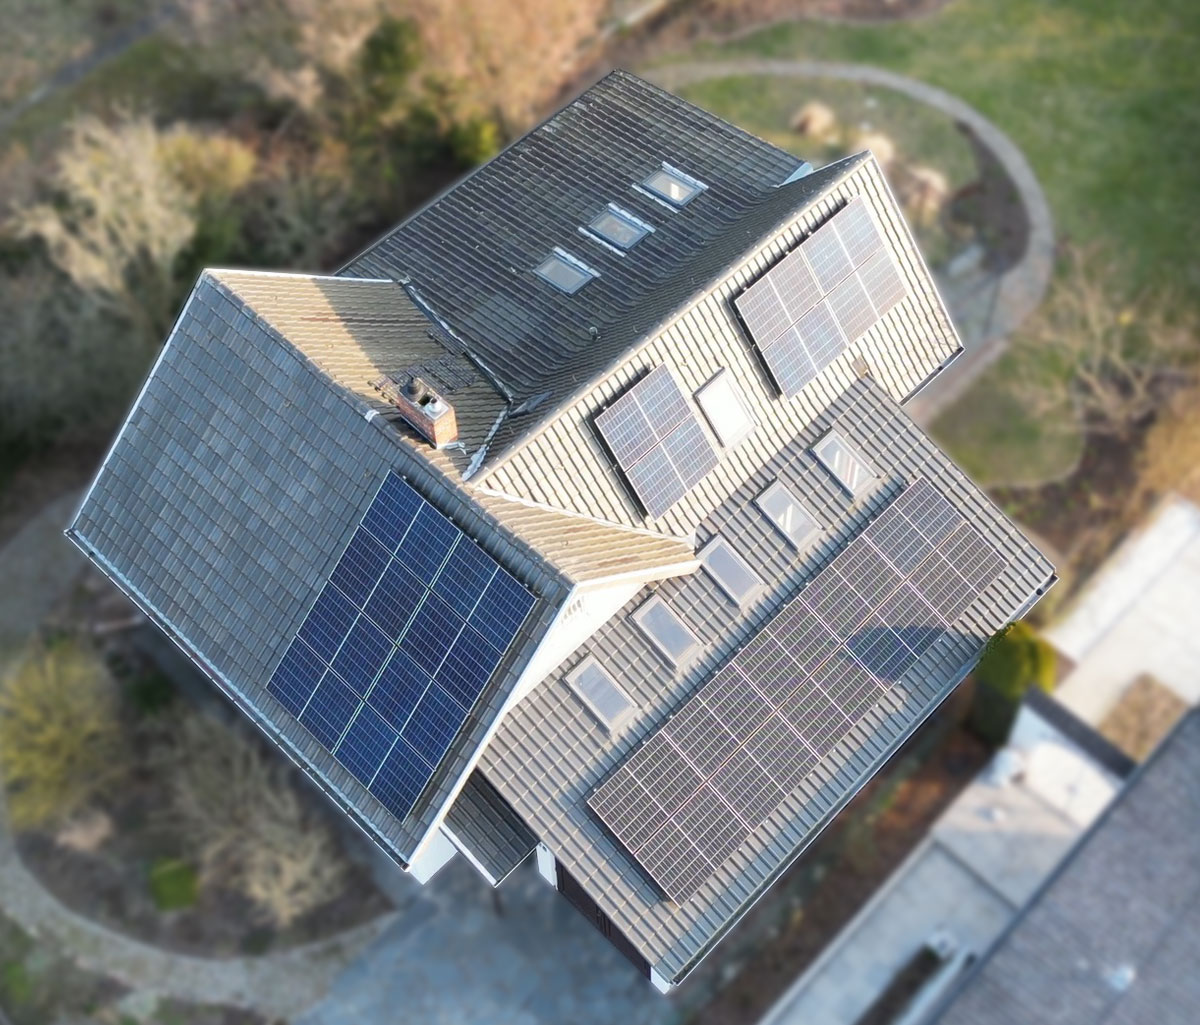 Referenzobjekt: Einfamilienhaus mit Photovoltaikanlage auf dem Dach